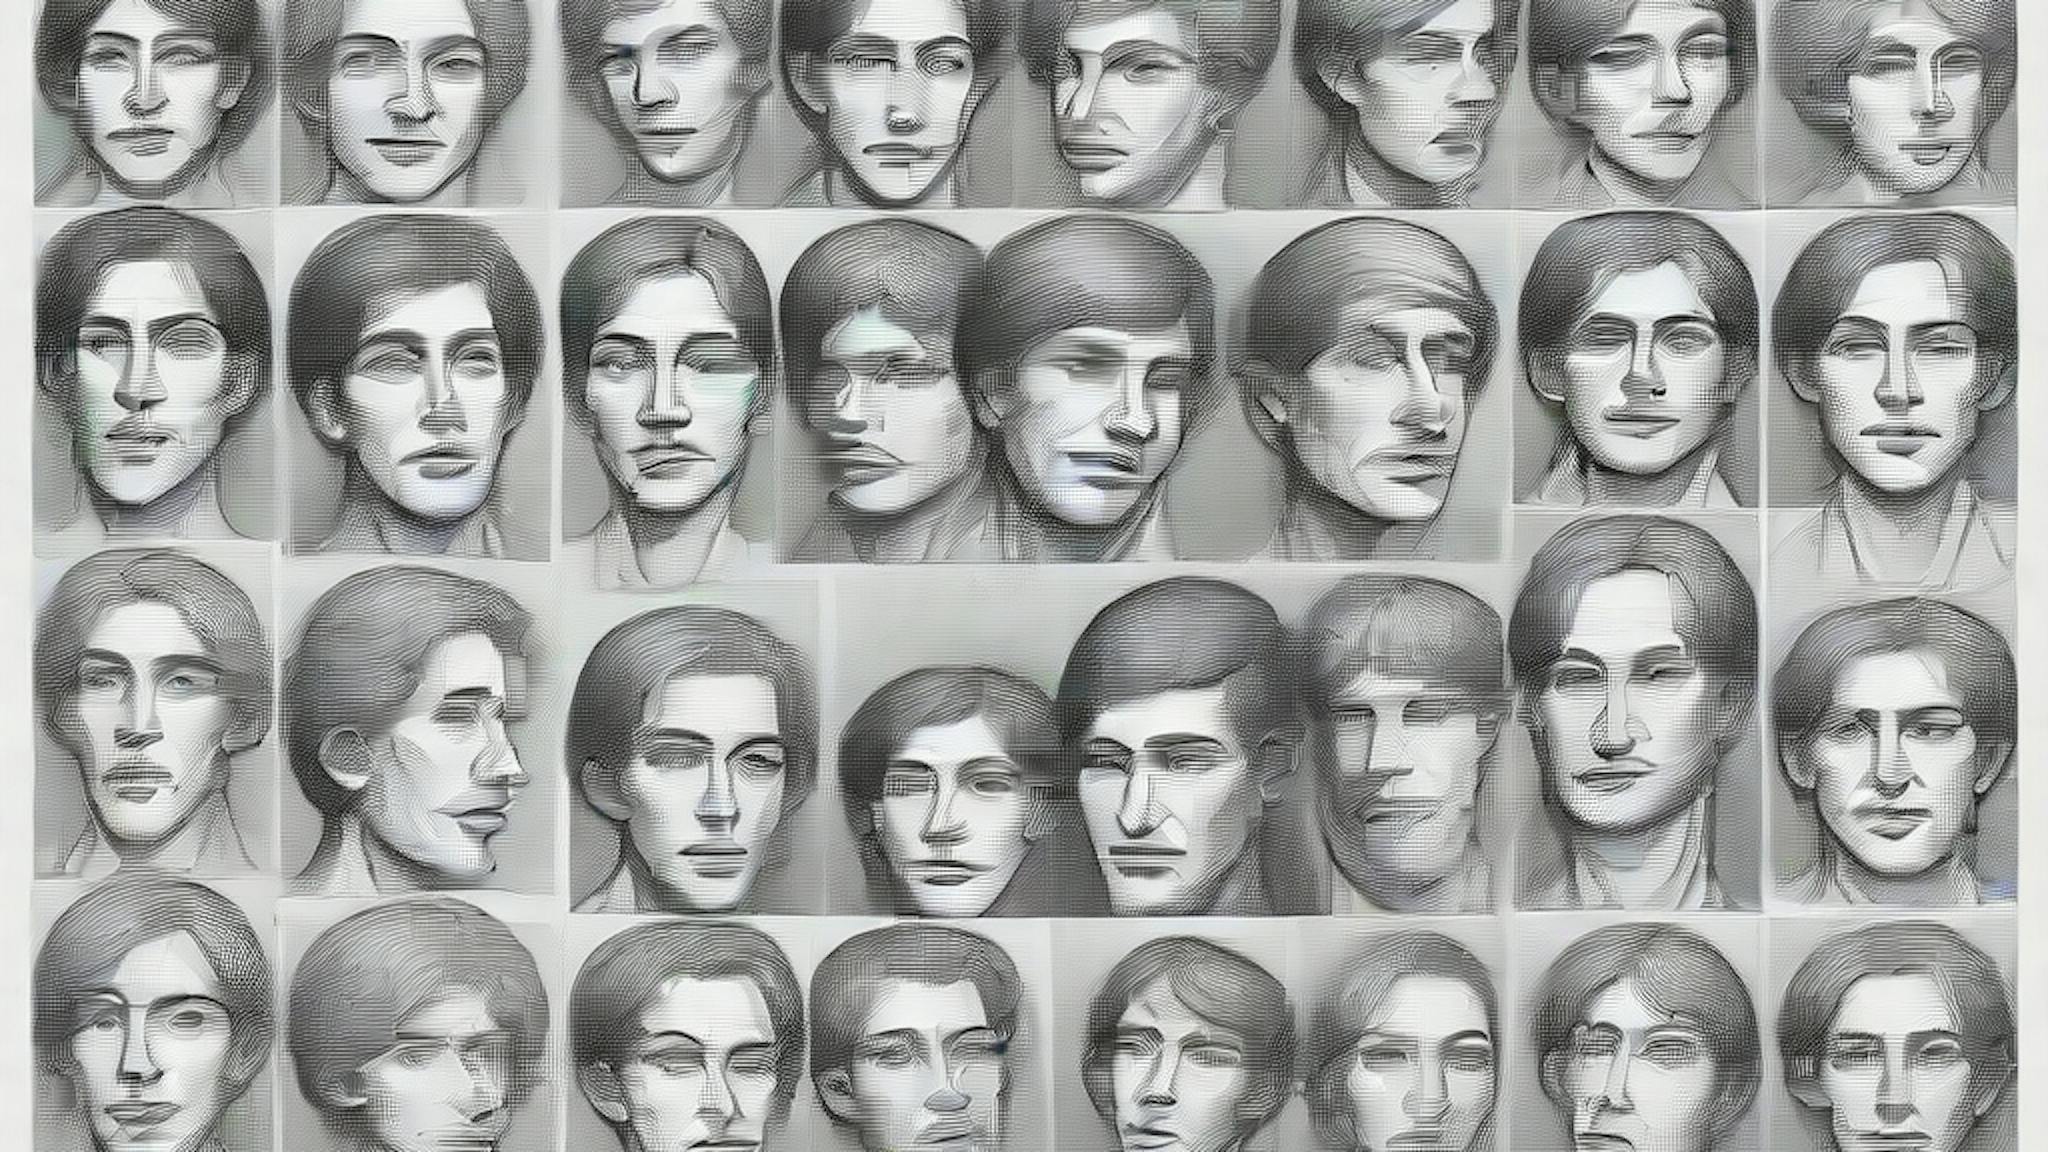 featured image - Tìm kiếm khuôn mặt do AI tạo ra trong tự nhiên: Kết quả